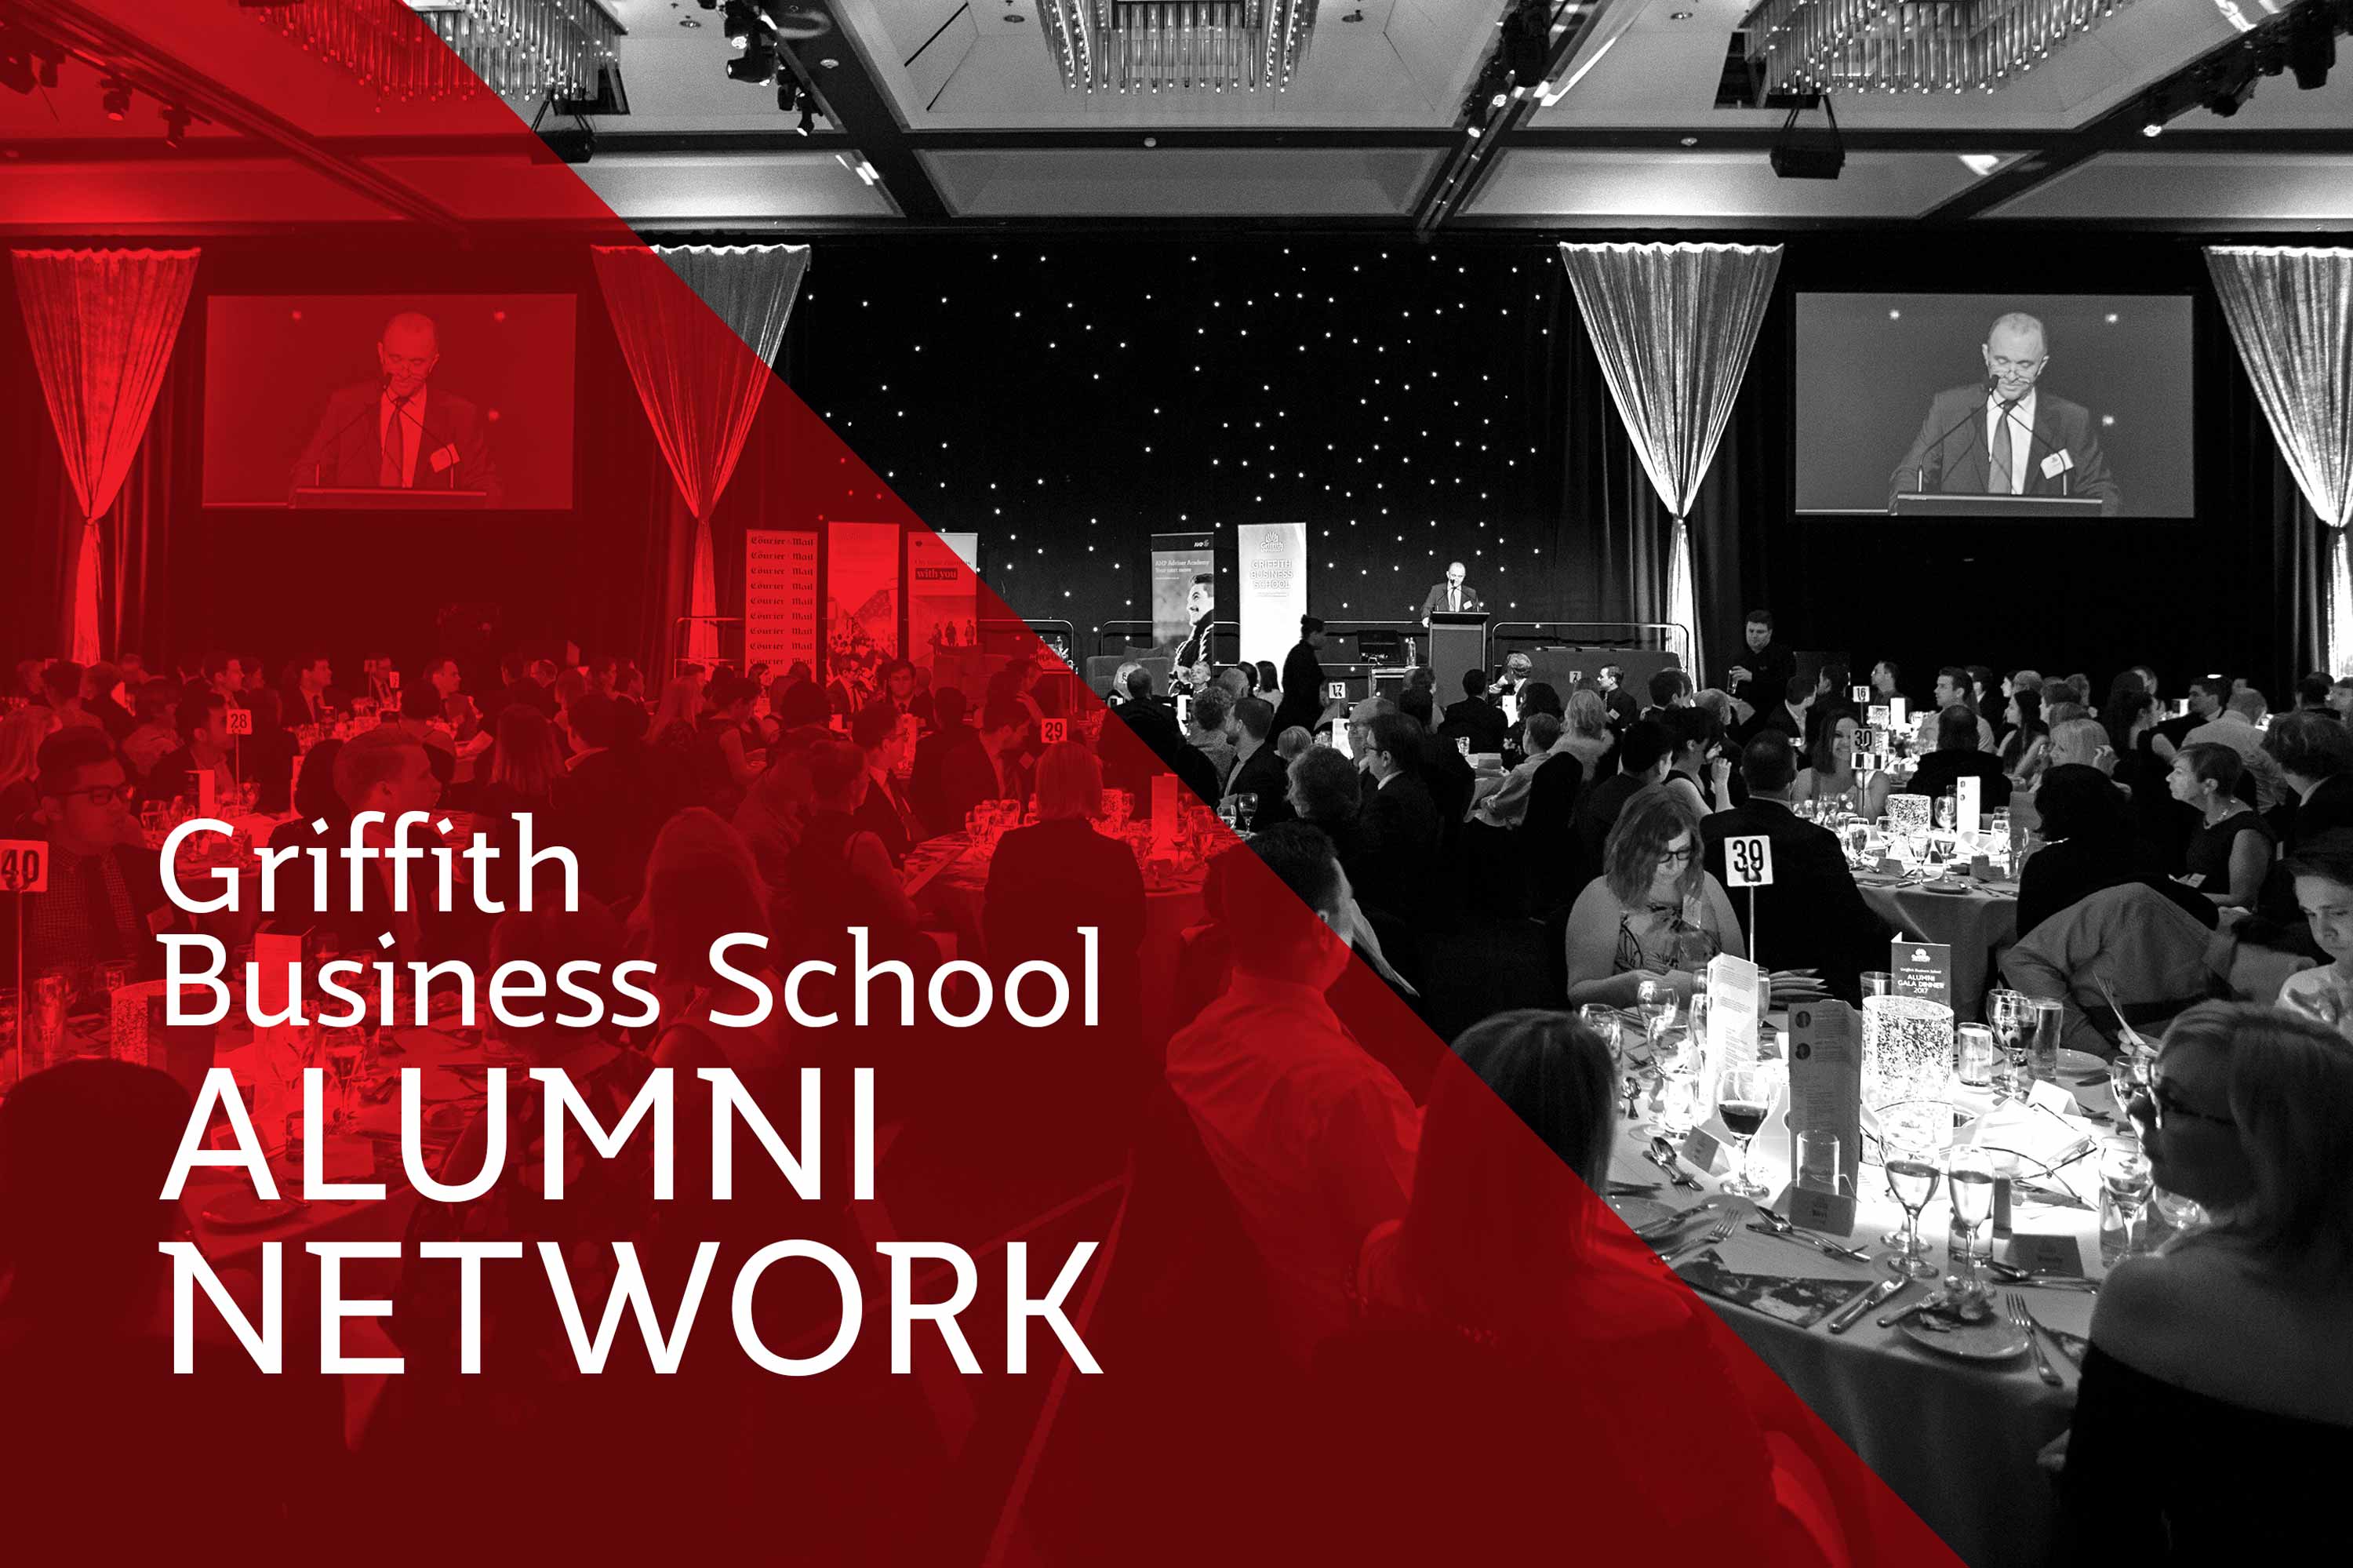 Griffith Business School Alumni Network Breakfast 